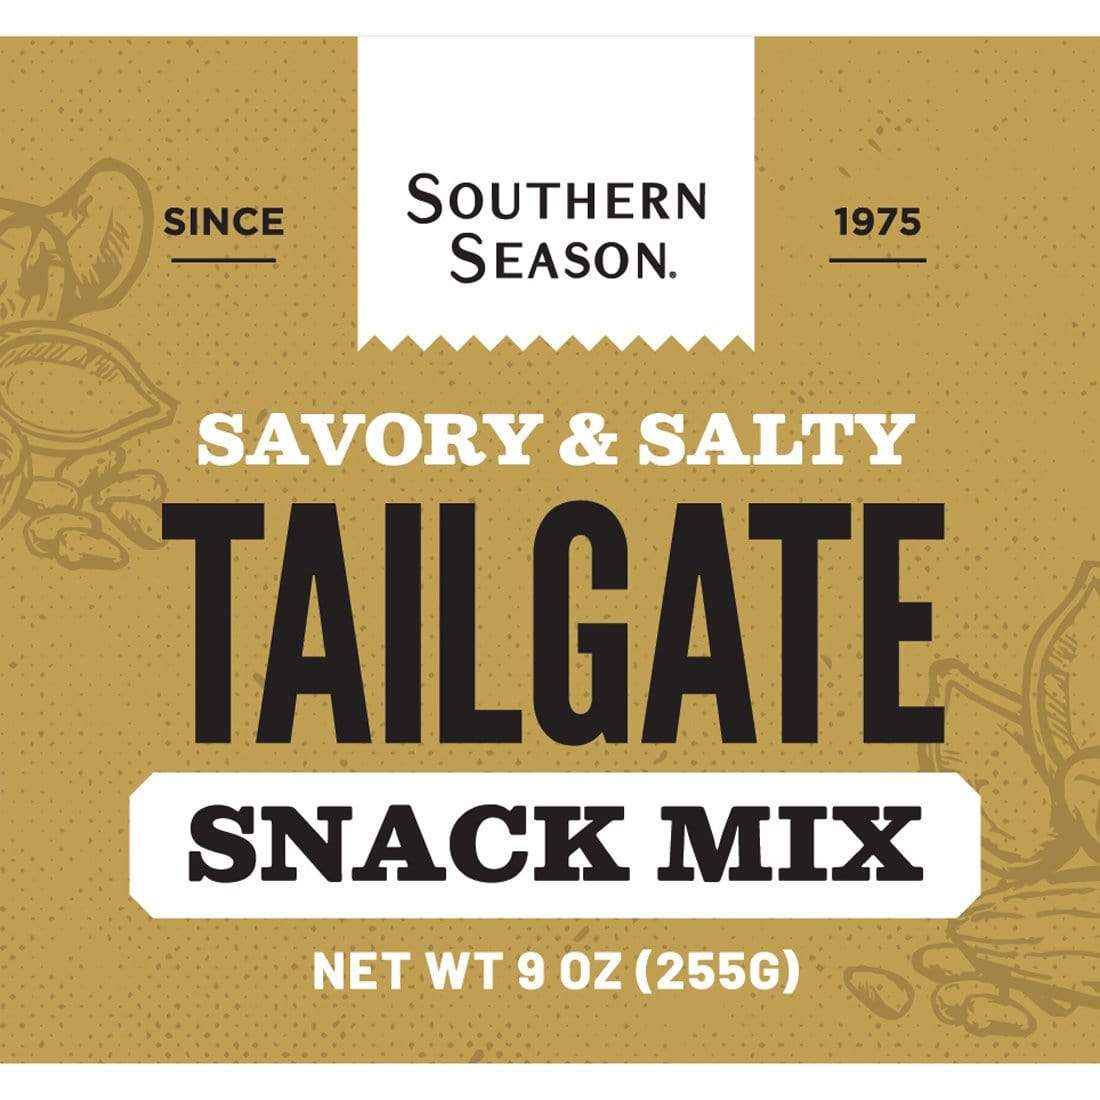 Southern Season Southern Season Tailgate Snack Mix 9 oz